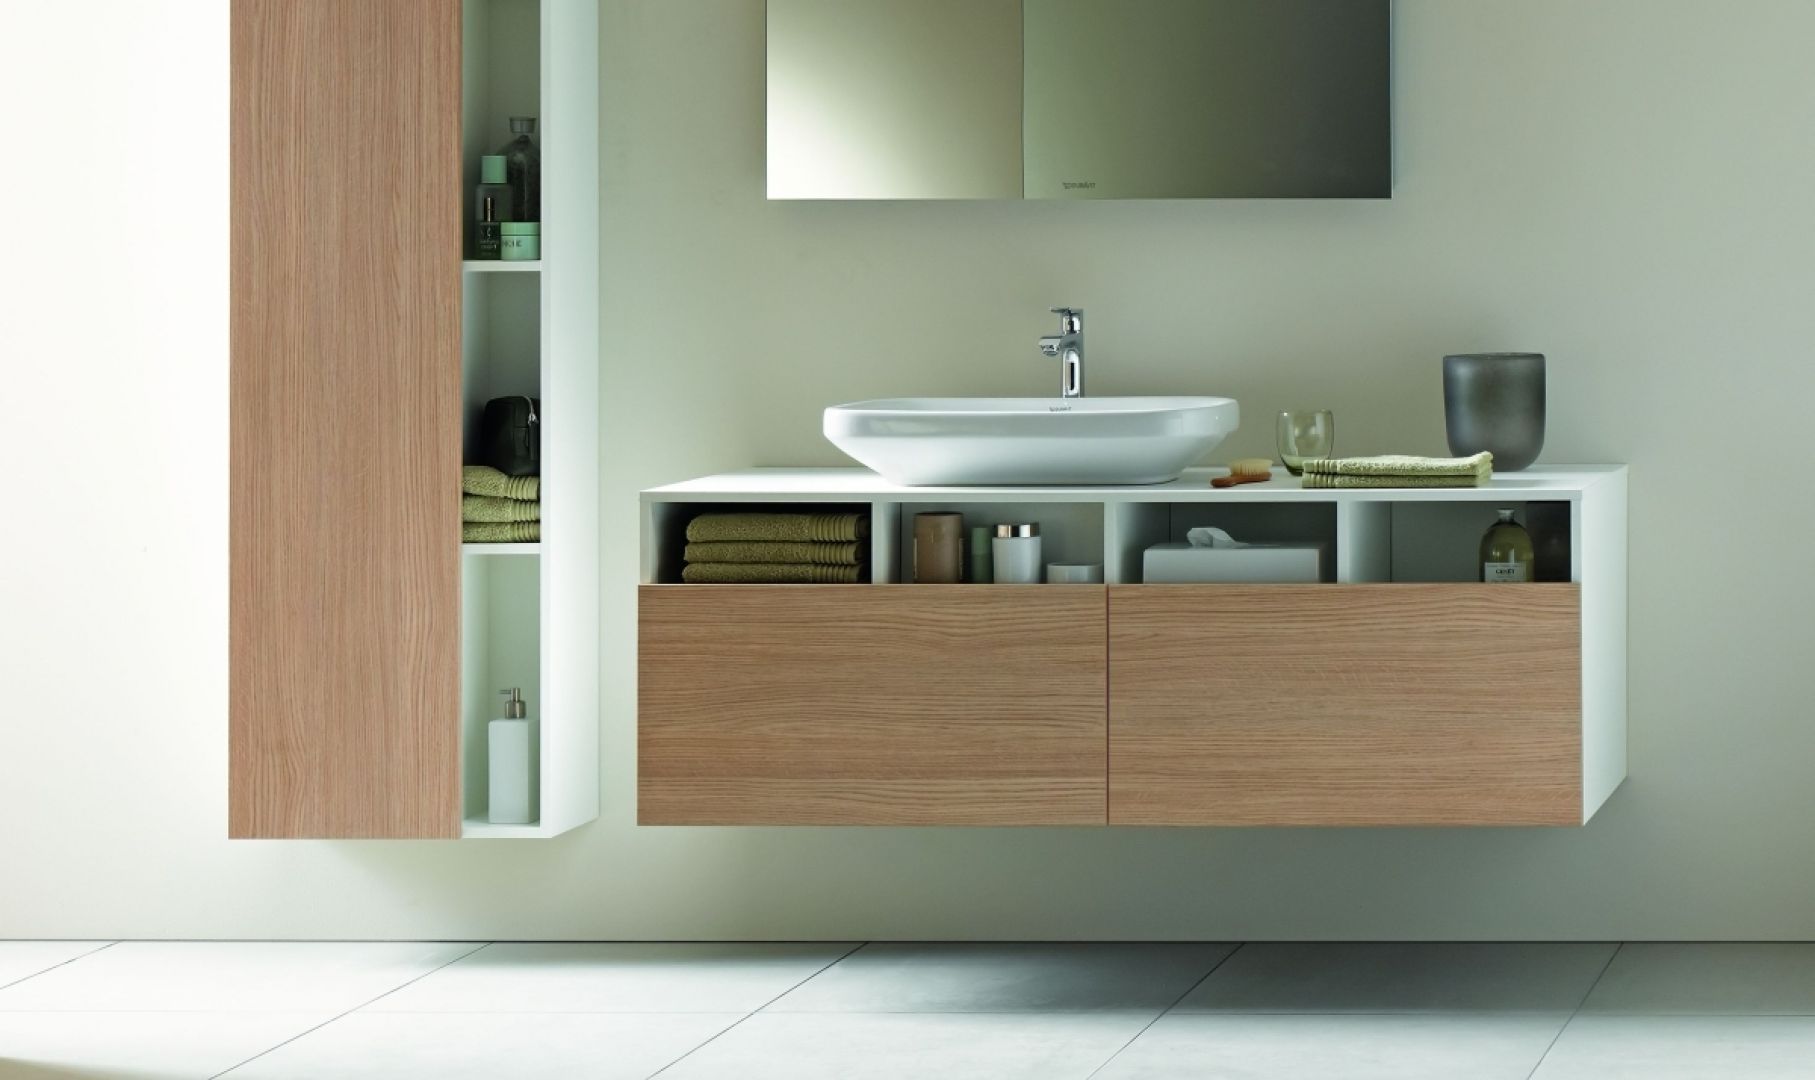 DuraStyle zaprojektowana przez Matteo Thun & Partners seria łazienkowa wywiera w świadomy sposób wrażenie prostoty. Fot. Duravit